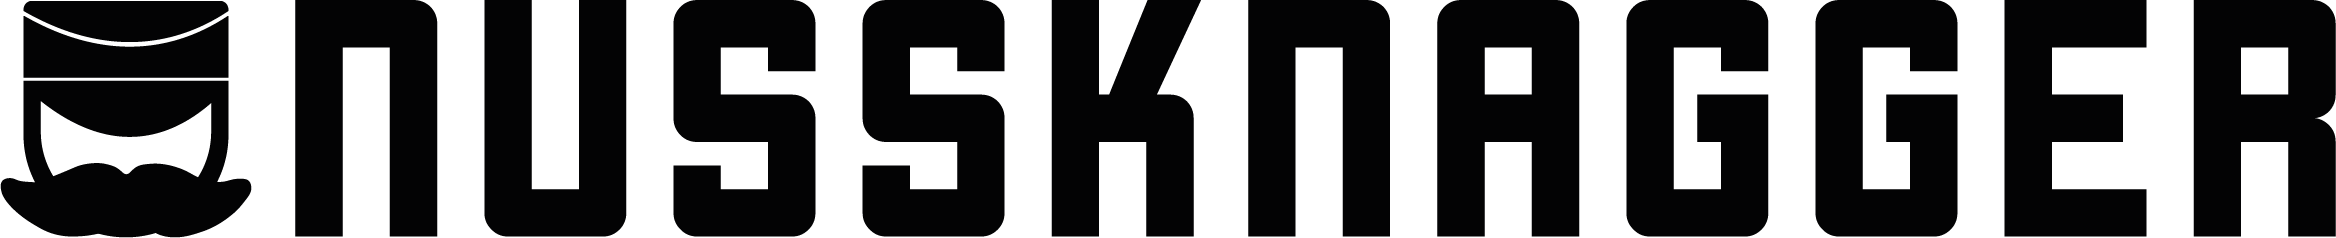 nussknagger Logo